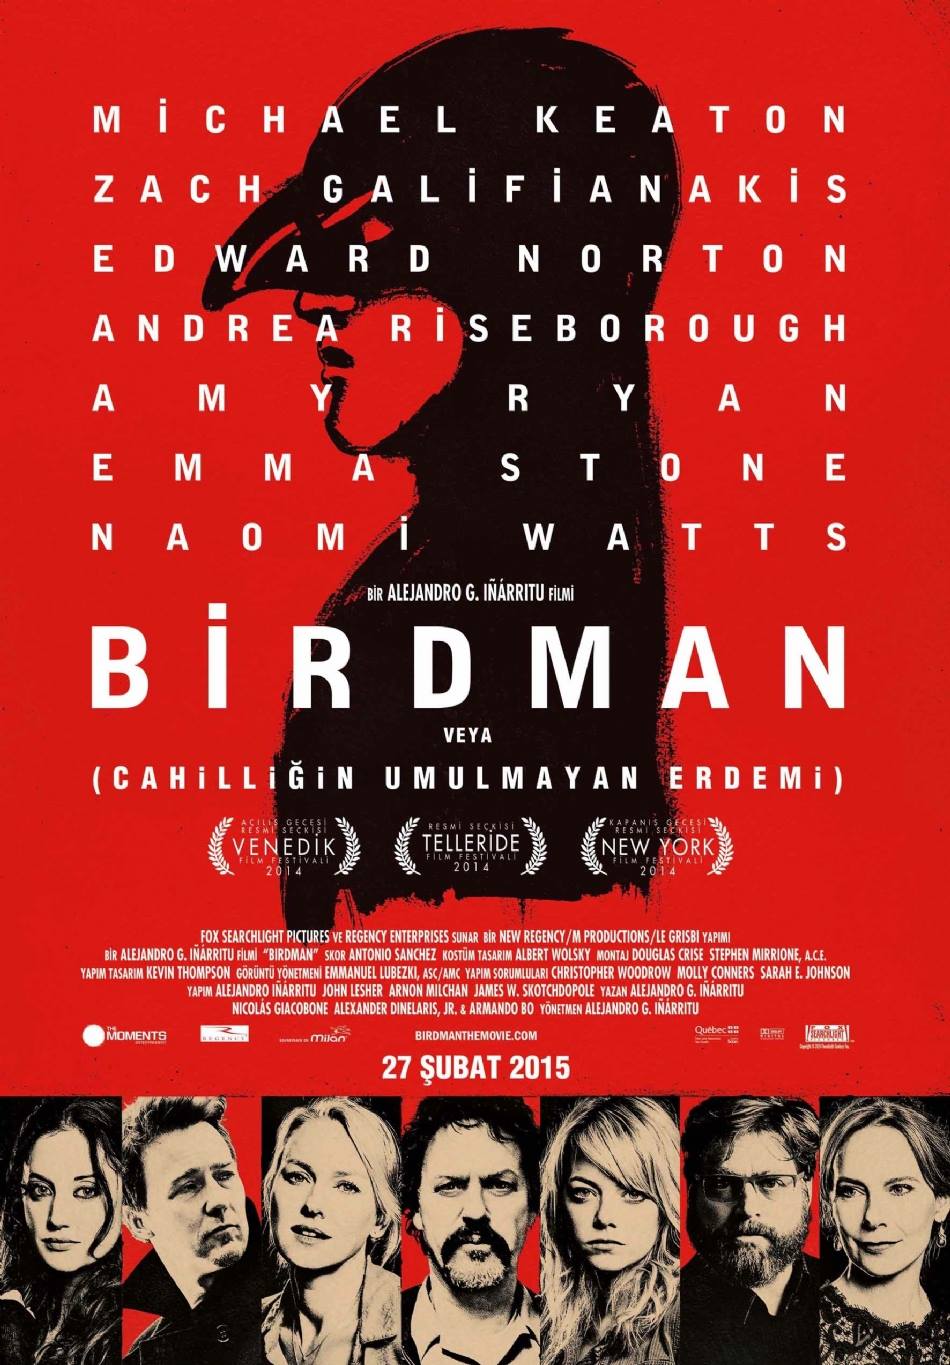 Birdman or (The Unexpected Virtue of Ignorance)-Birdman veya (Cahilliğin Umulmayan Erdemi